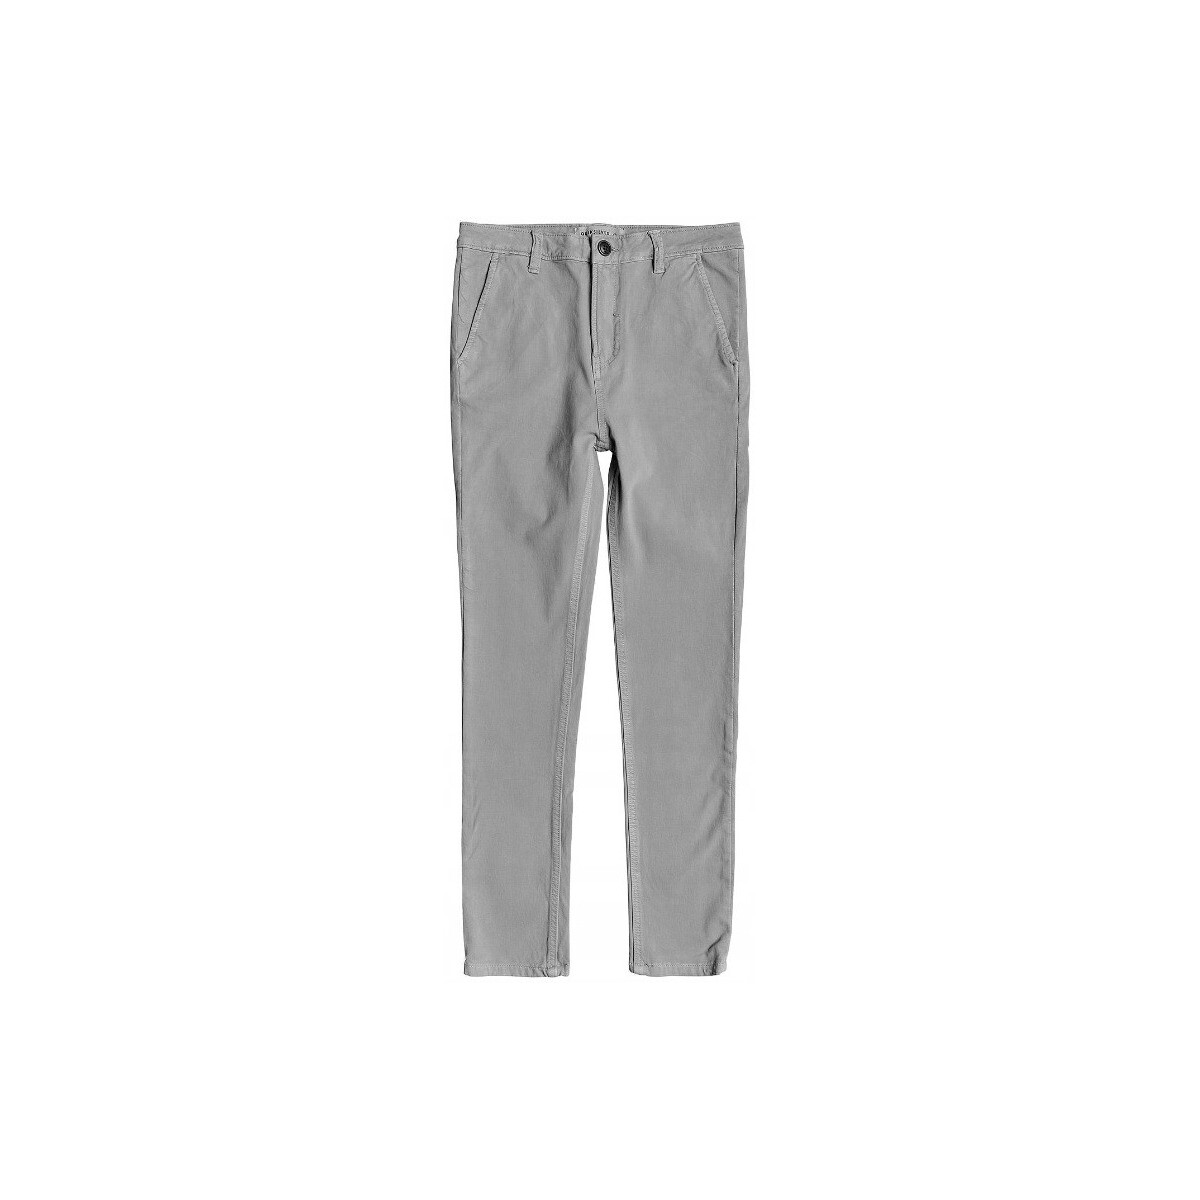 Vêtements Garçon Jeans Quiksilver Junior - Pantalon - gris Gris